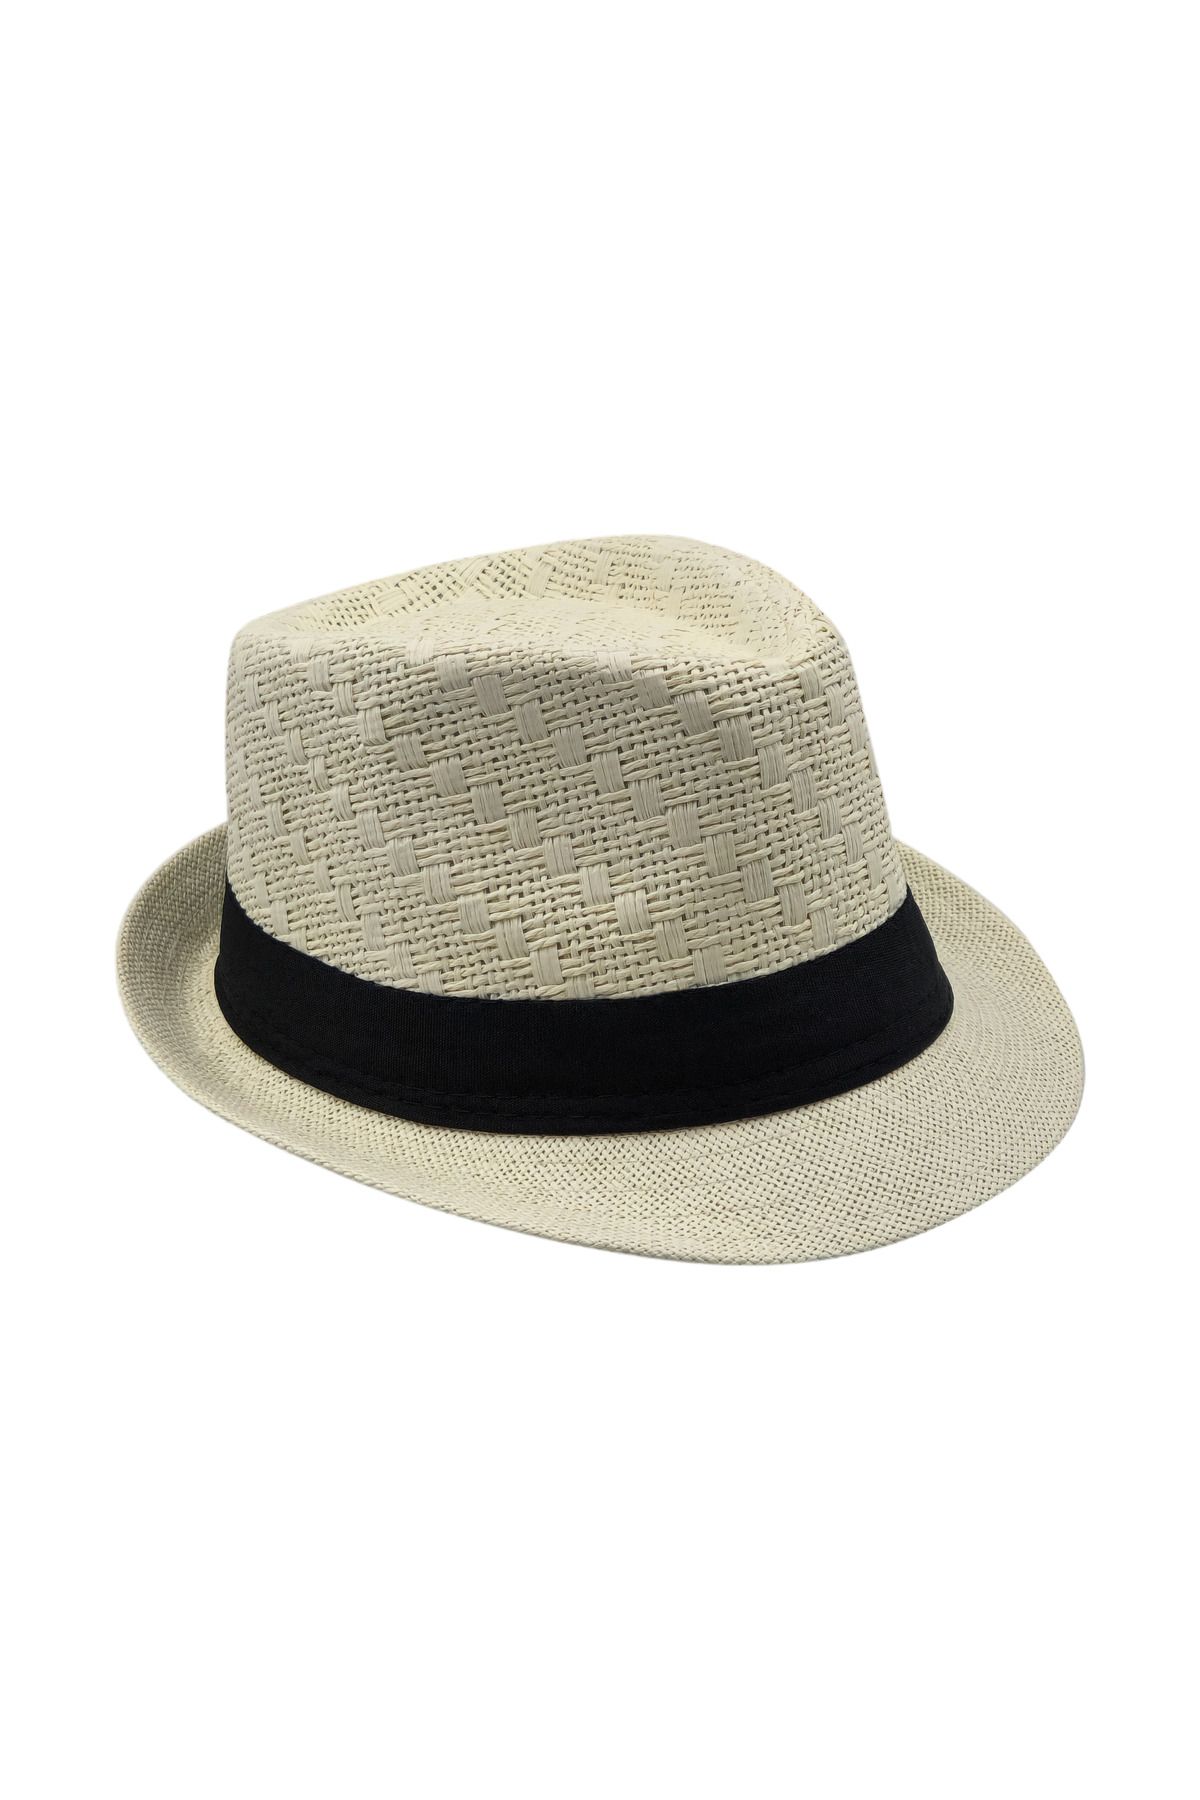 Milleniva Yazlık Hasır Panama, Erkek Kadın Fötr Şapka, Ekru